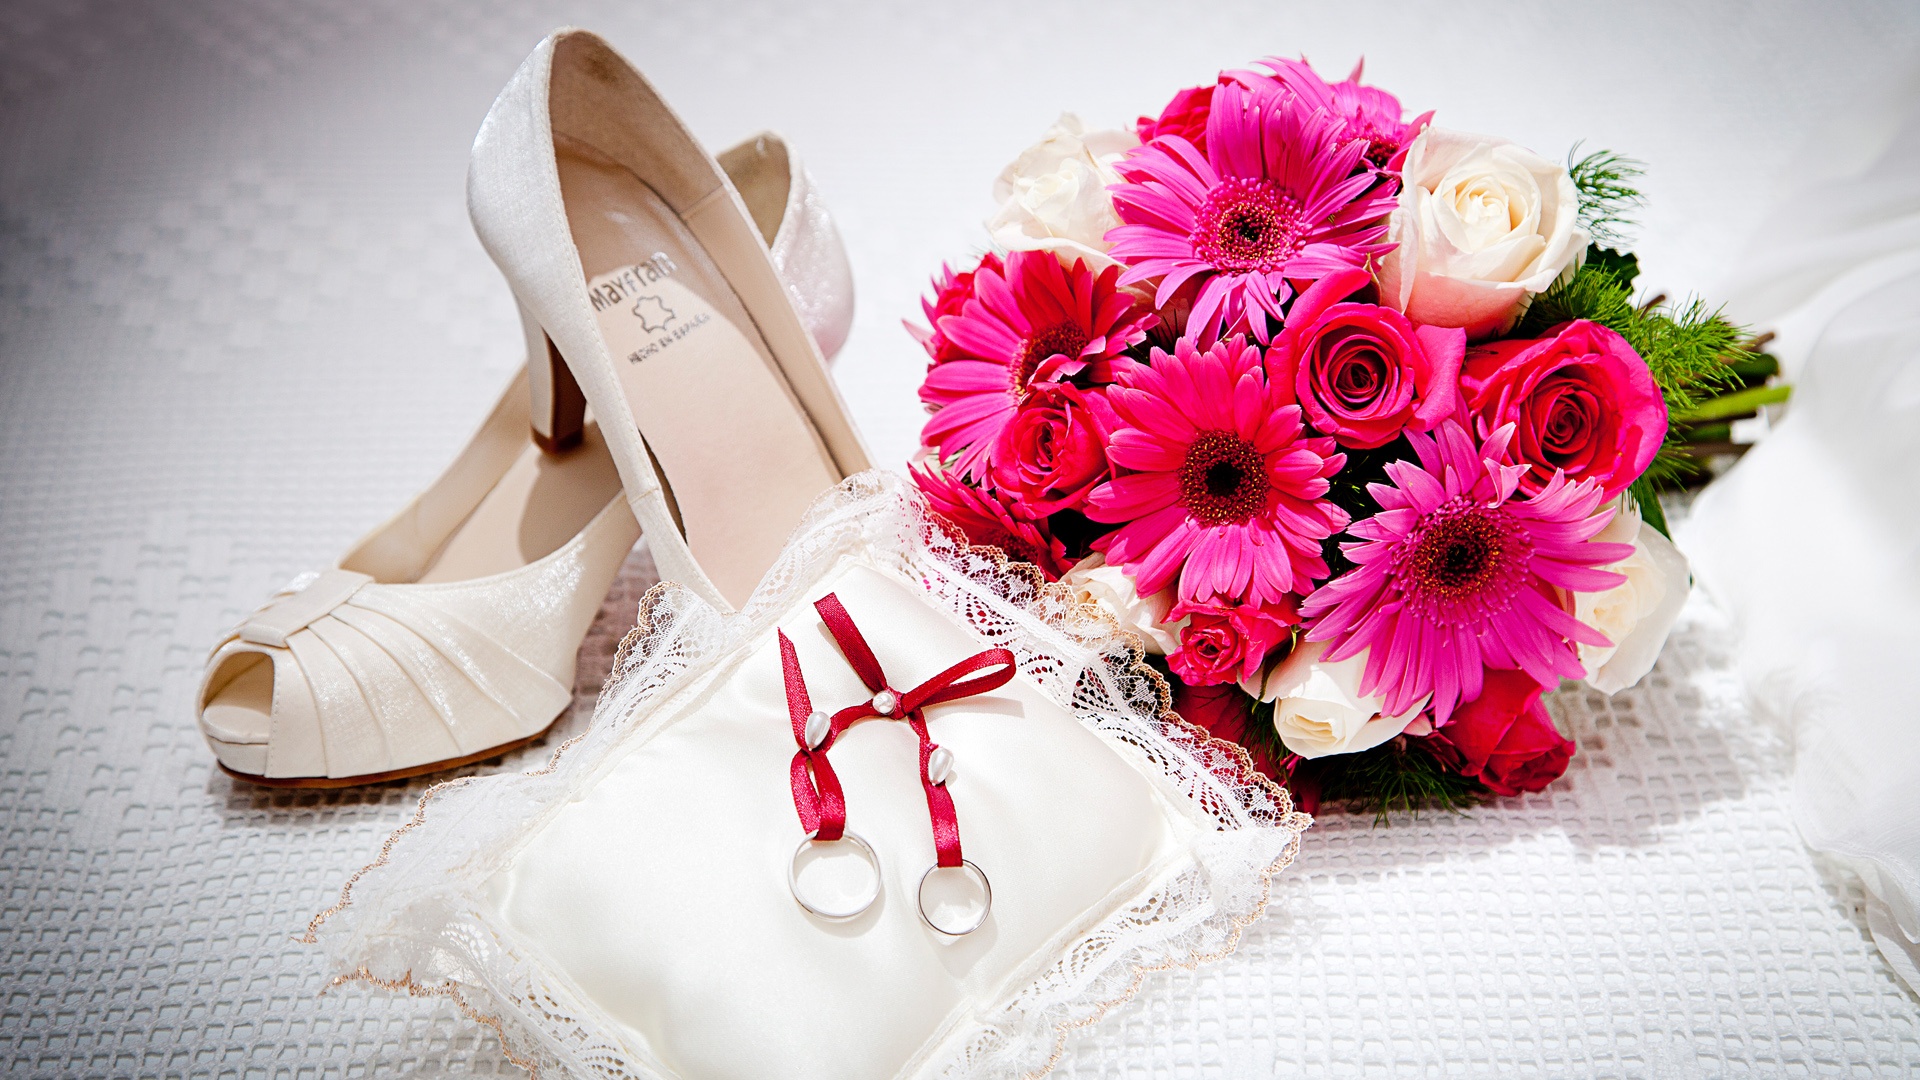 pink rose wedding image